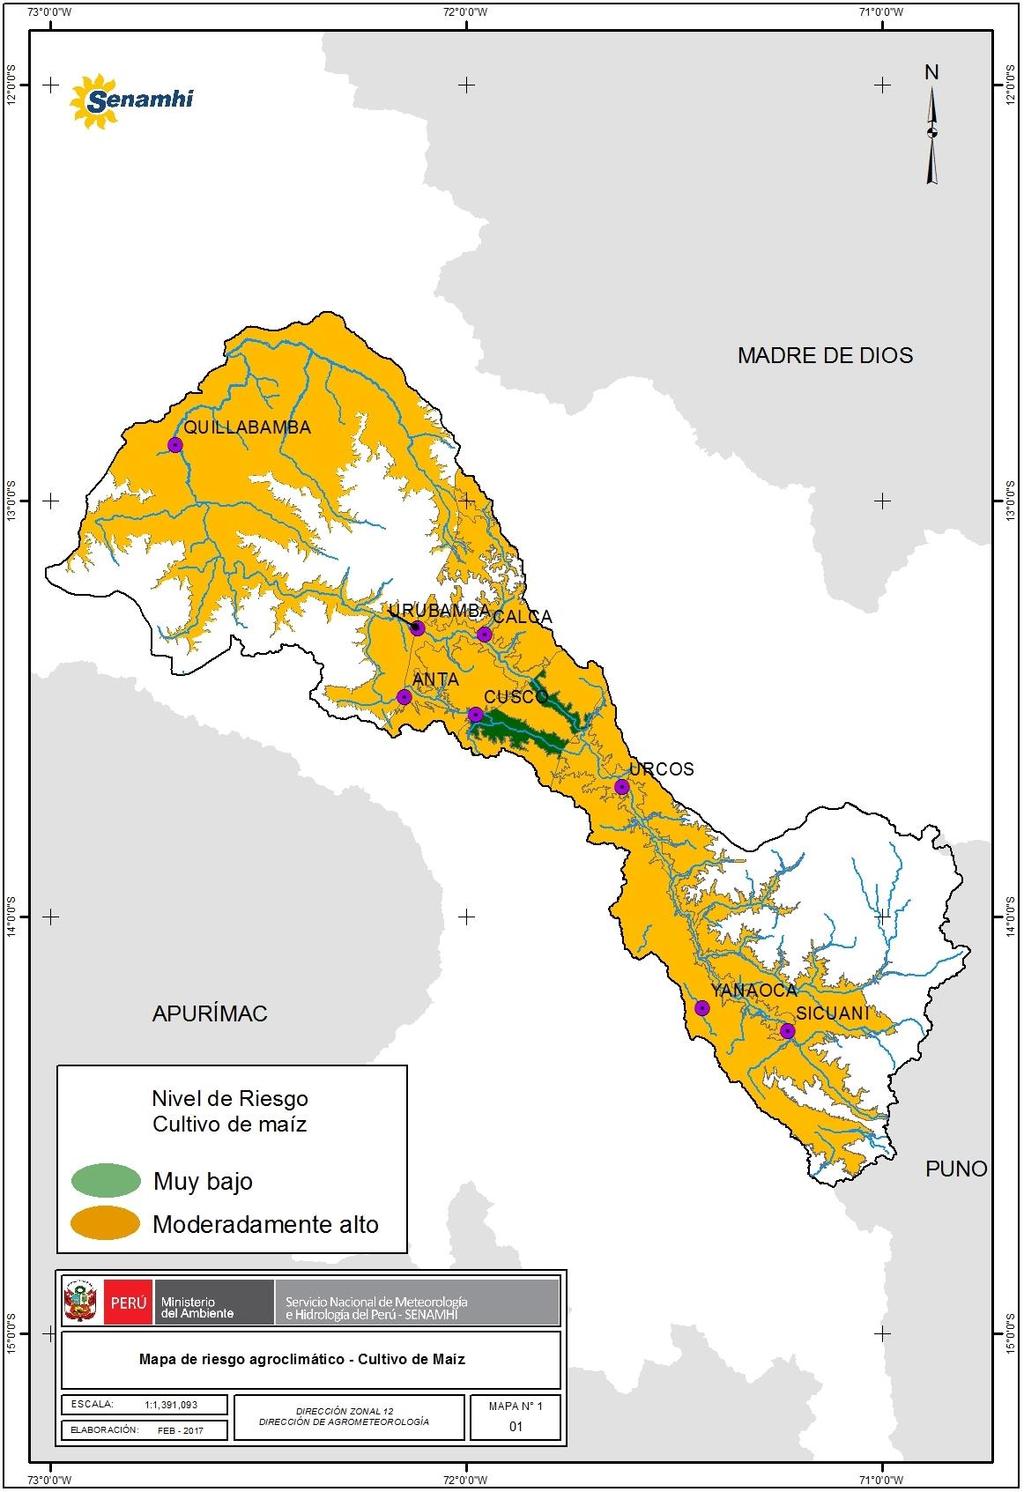 Riesgo Agroclimático para el cultivo de maíz por condiciones de lluvia y temperaturas extremas en la cuenca del río Urubamba, período febrero marzo y abril 2017 Mapa N 1 Nivel de riesgo agroclimático.